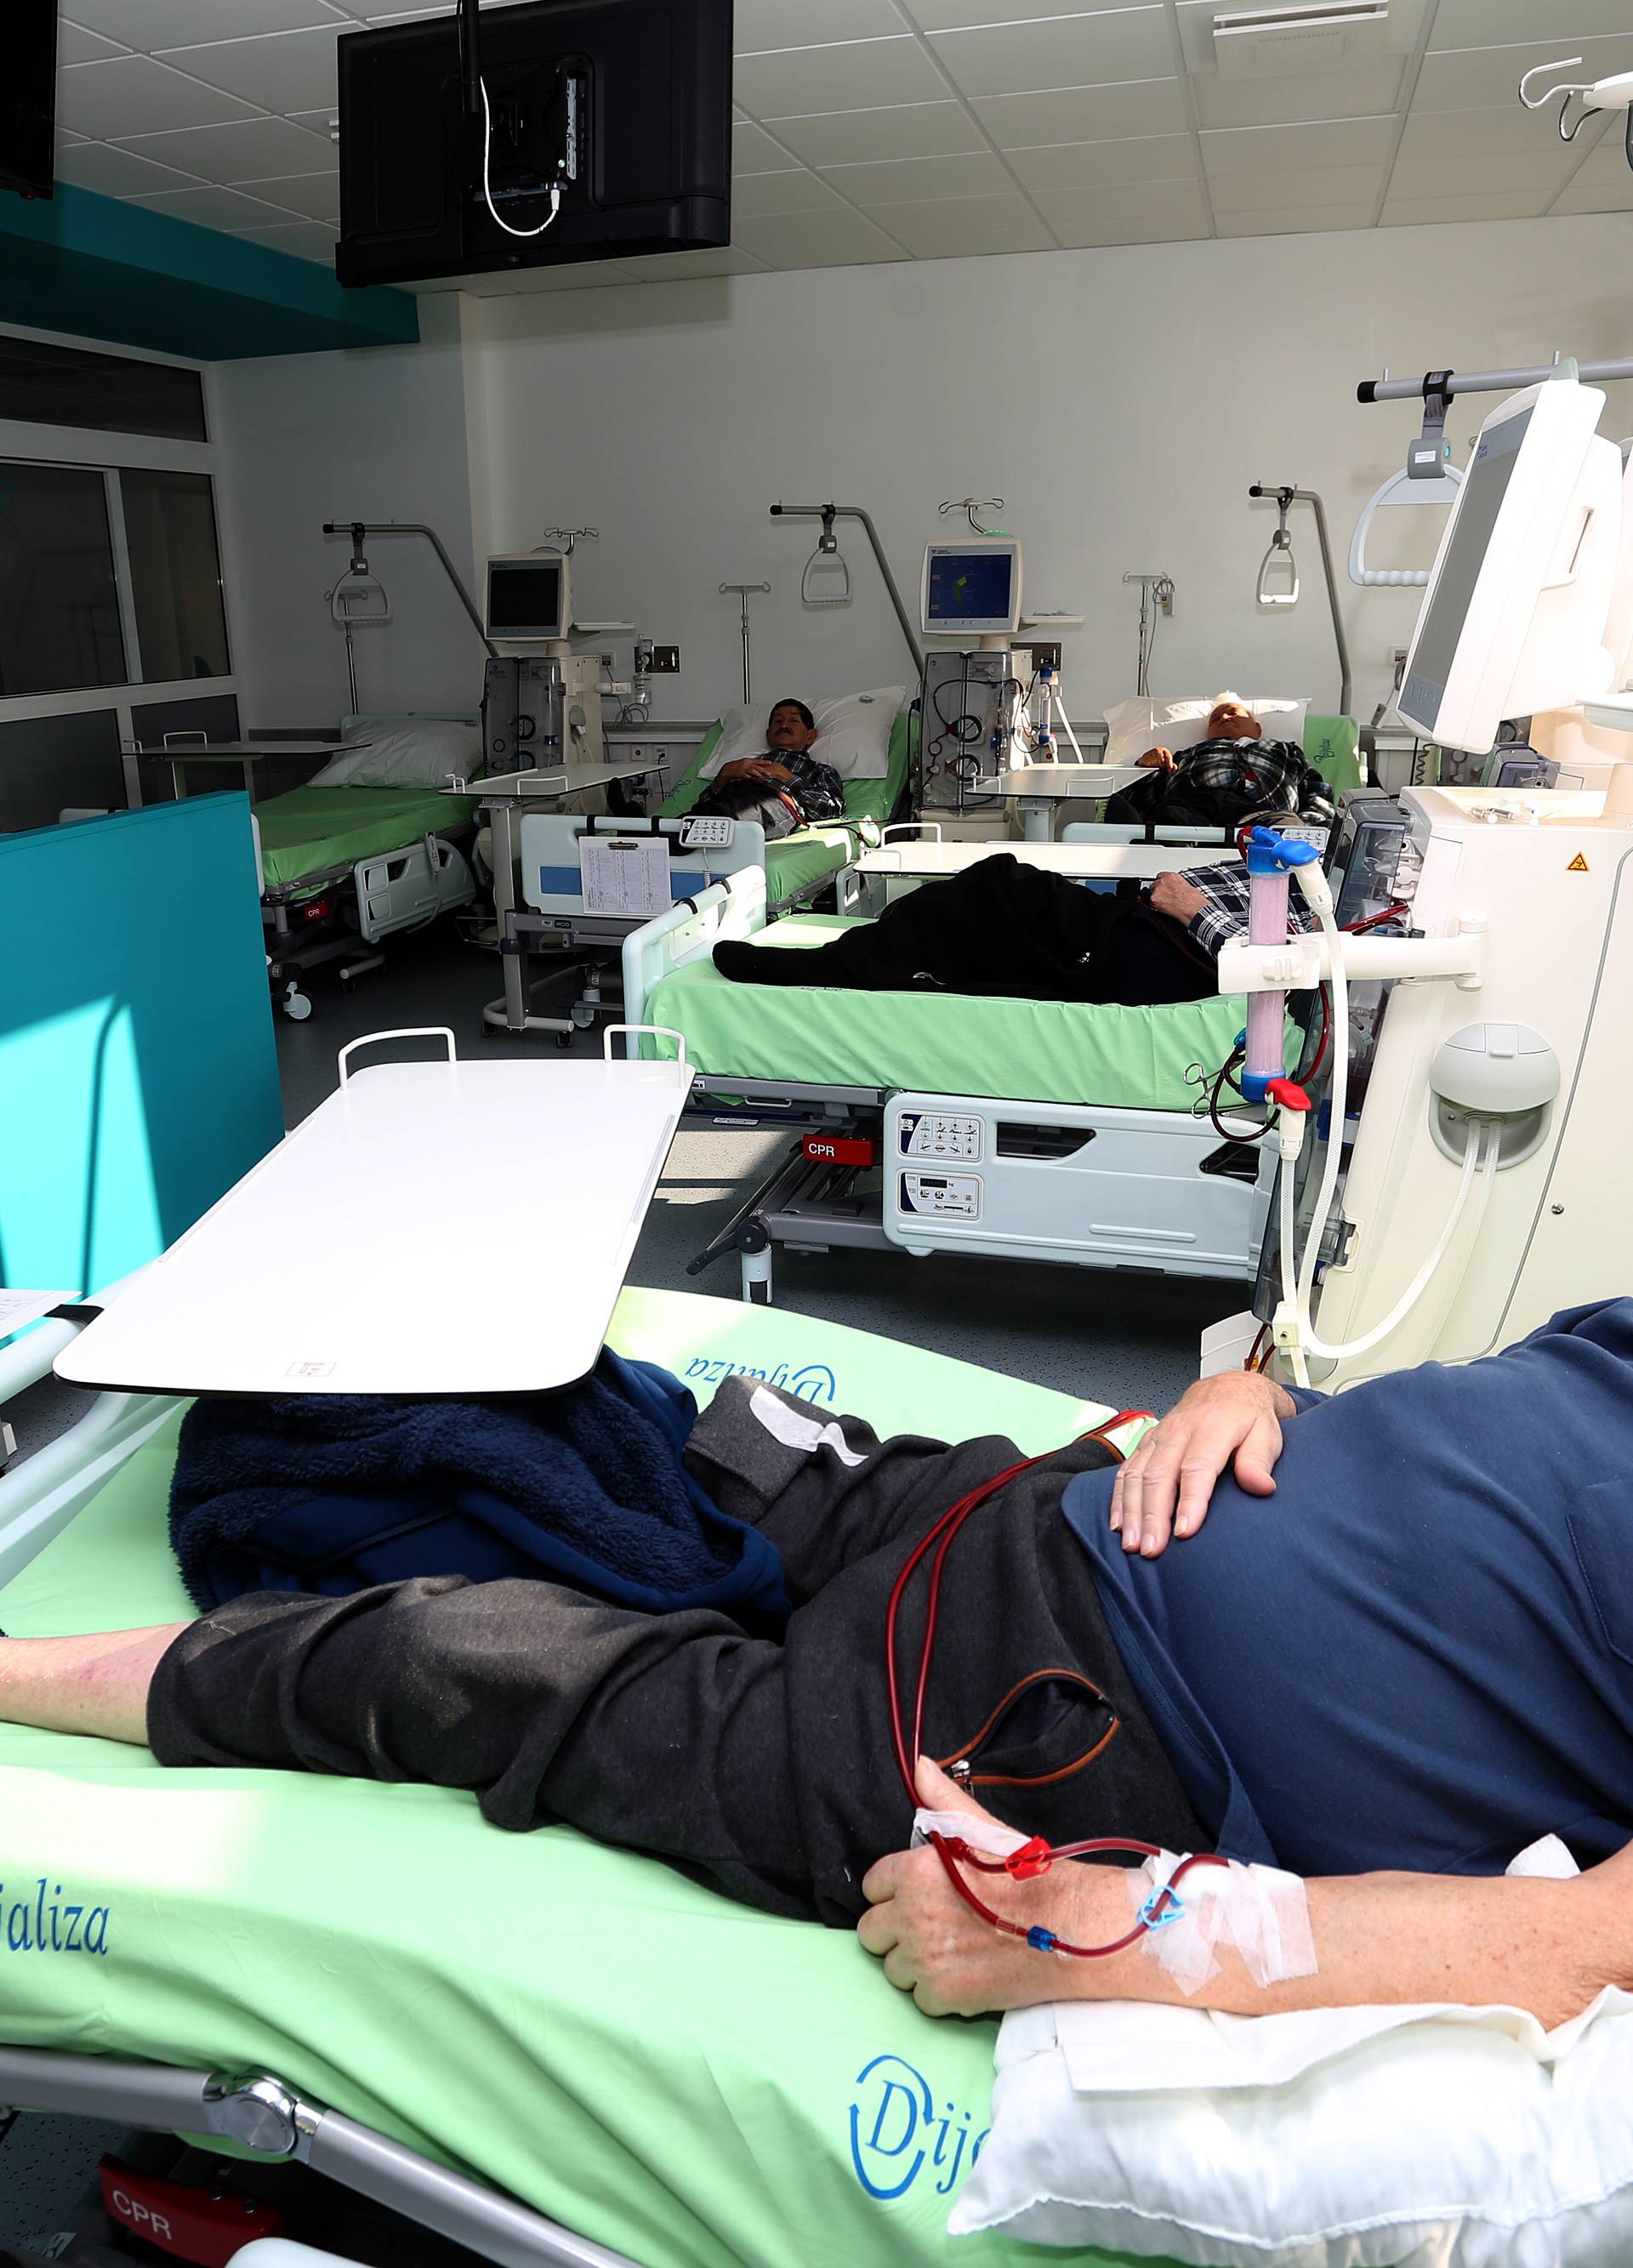 Karlovac: Otvorenje novouređenog prostora dnevne bolnice za hemodijalizu